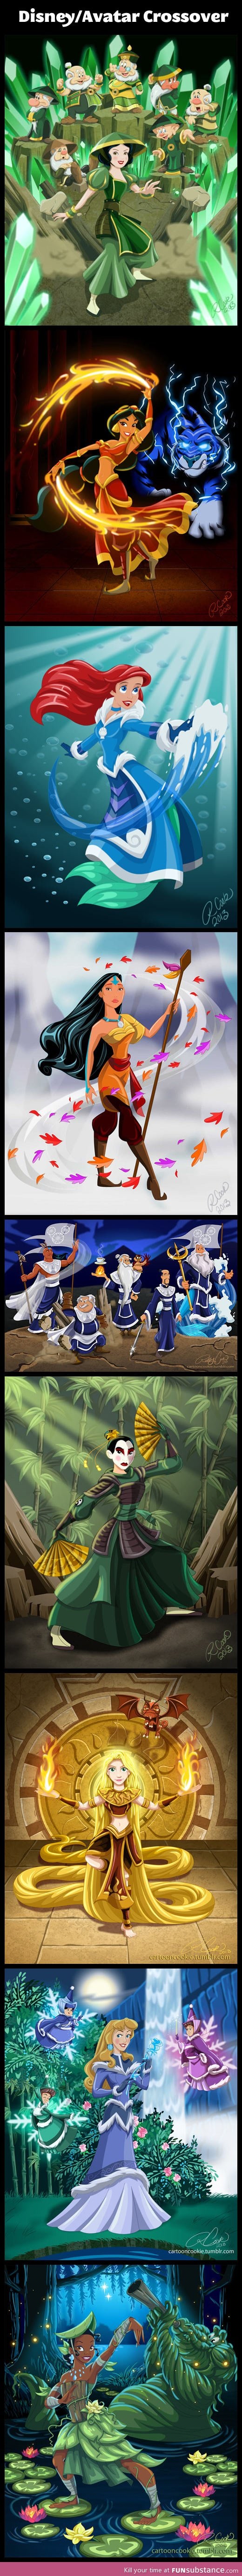 Disney/Avatar crossover